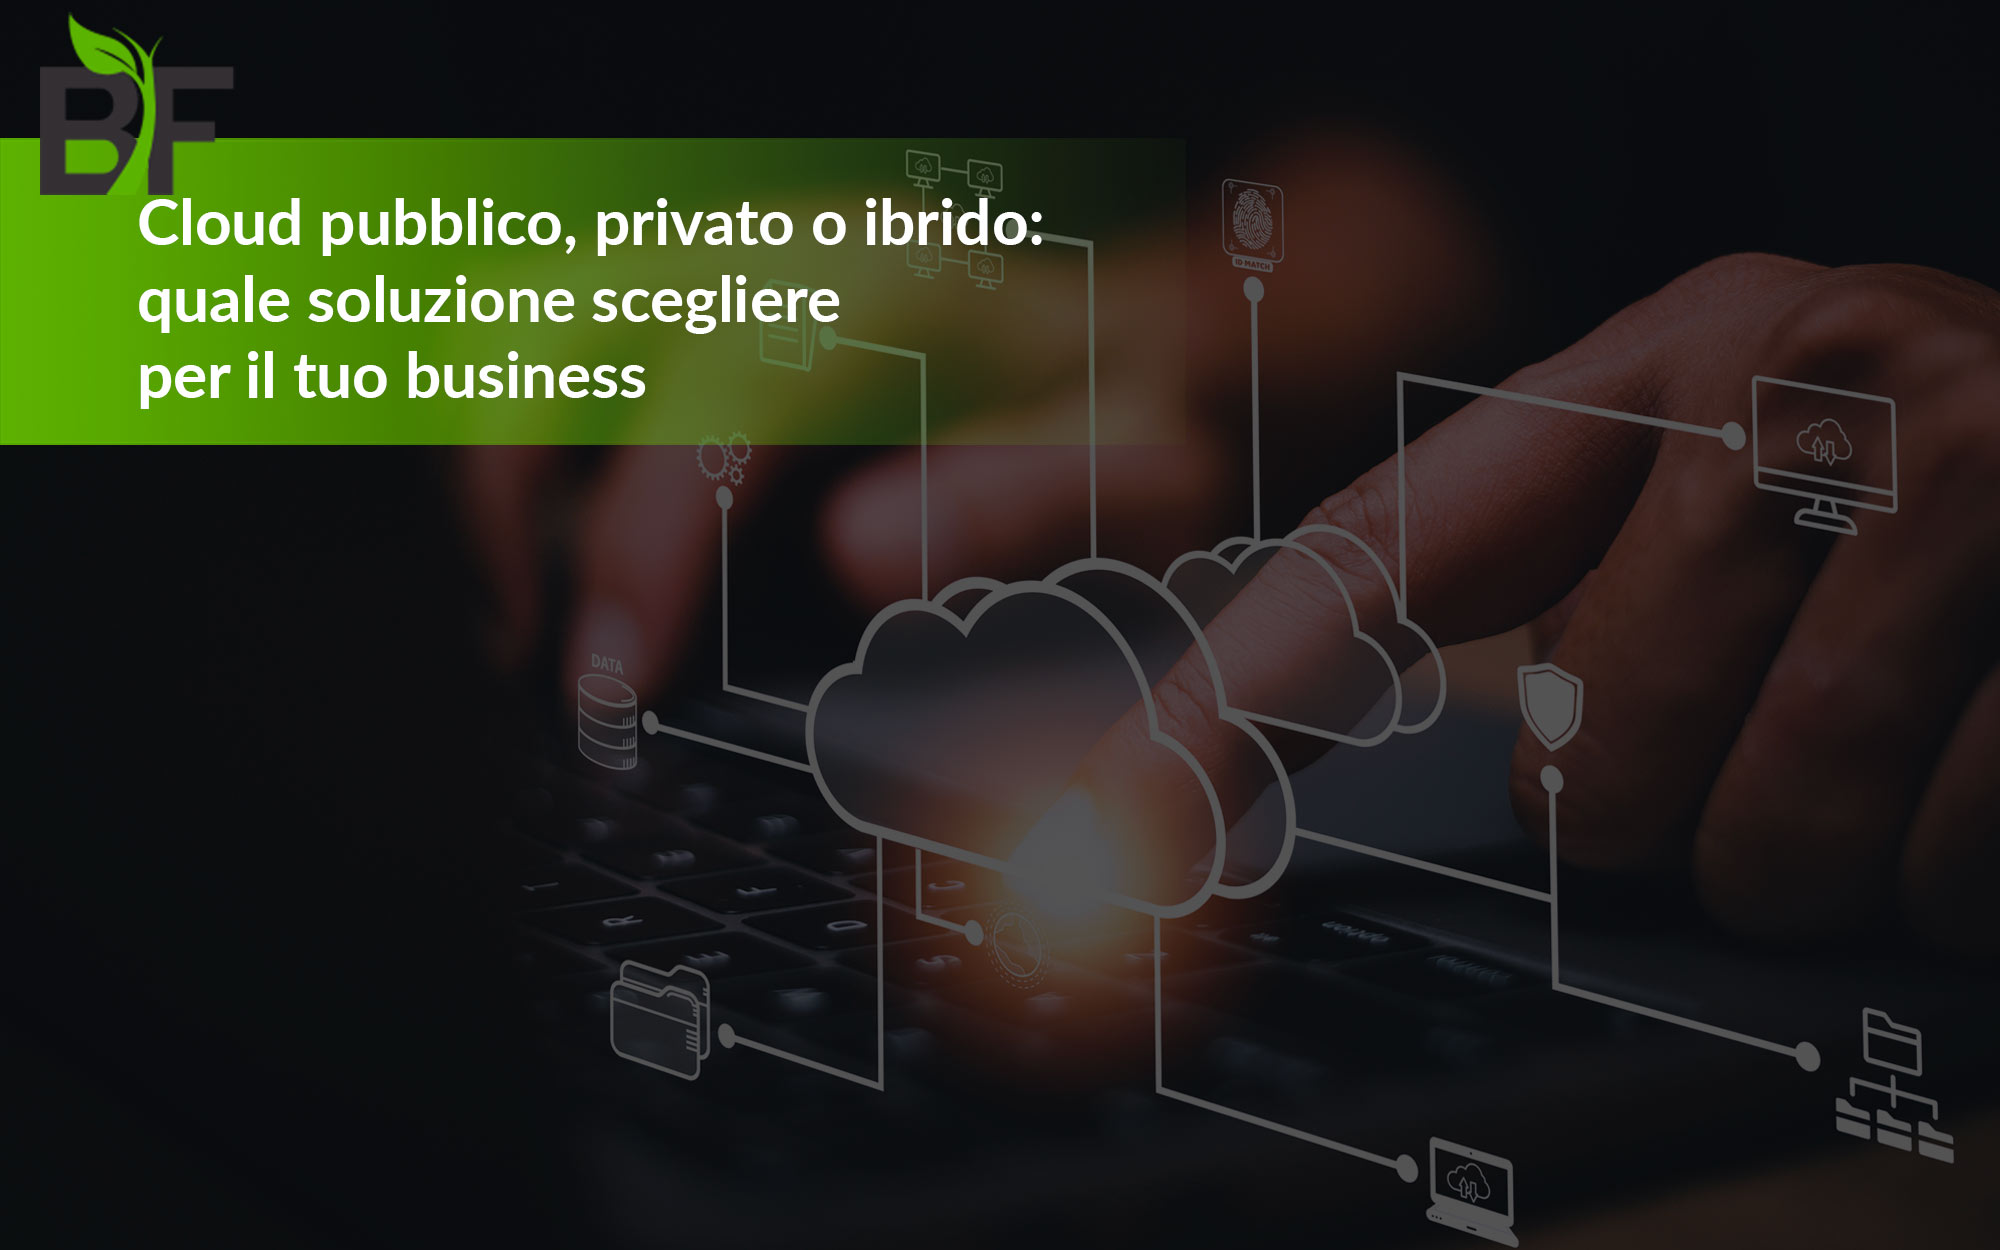 Cloud pubblico privato o ibrido